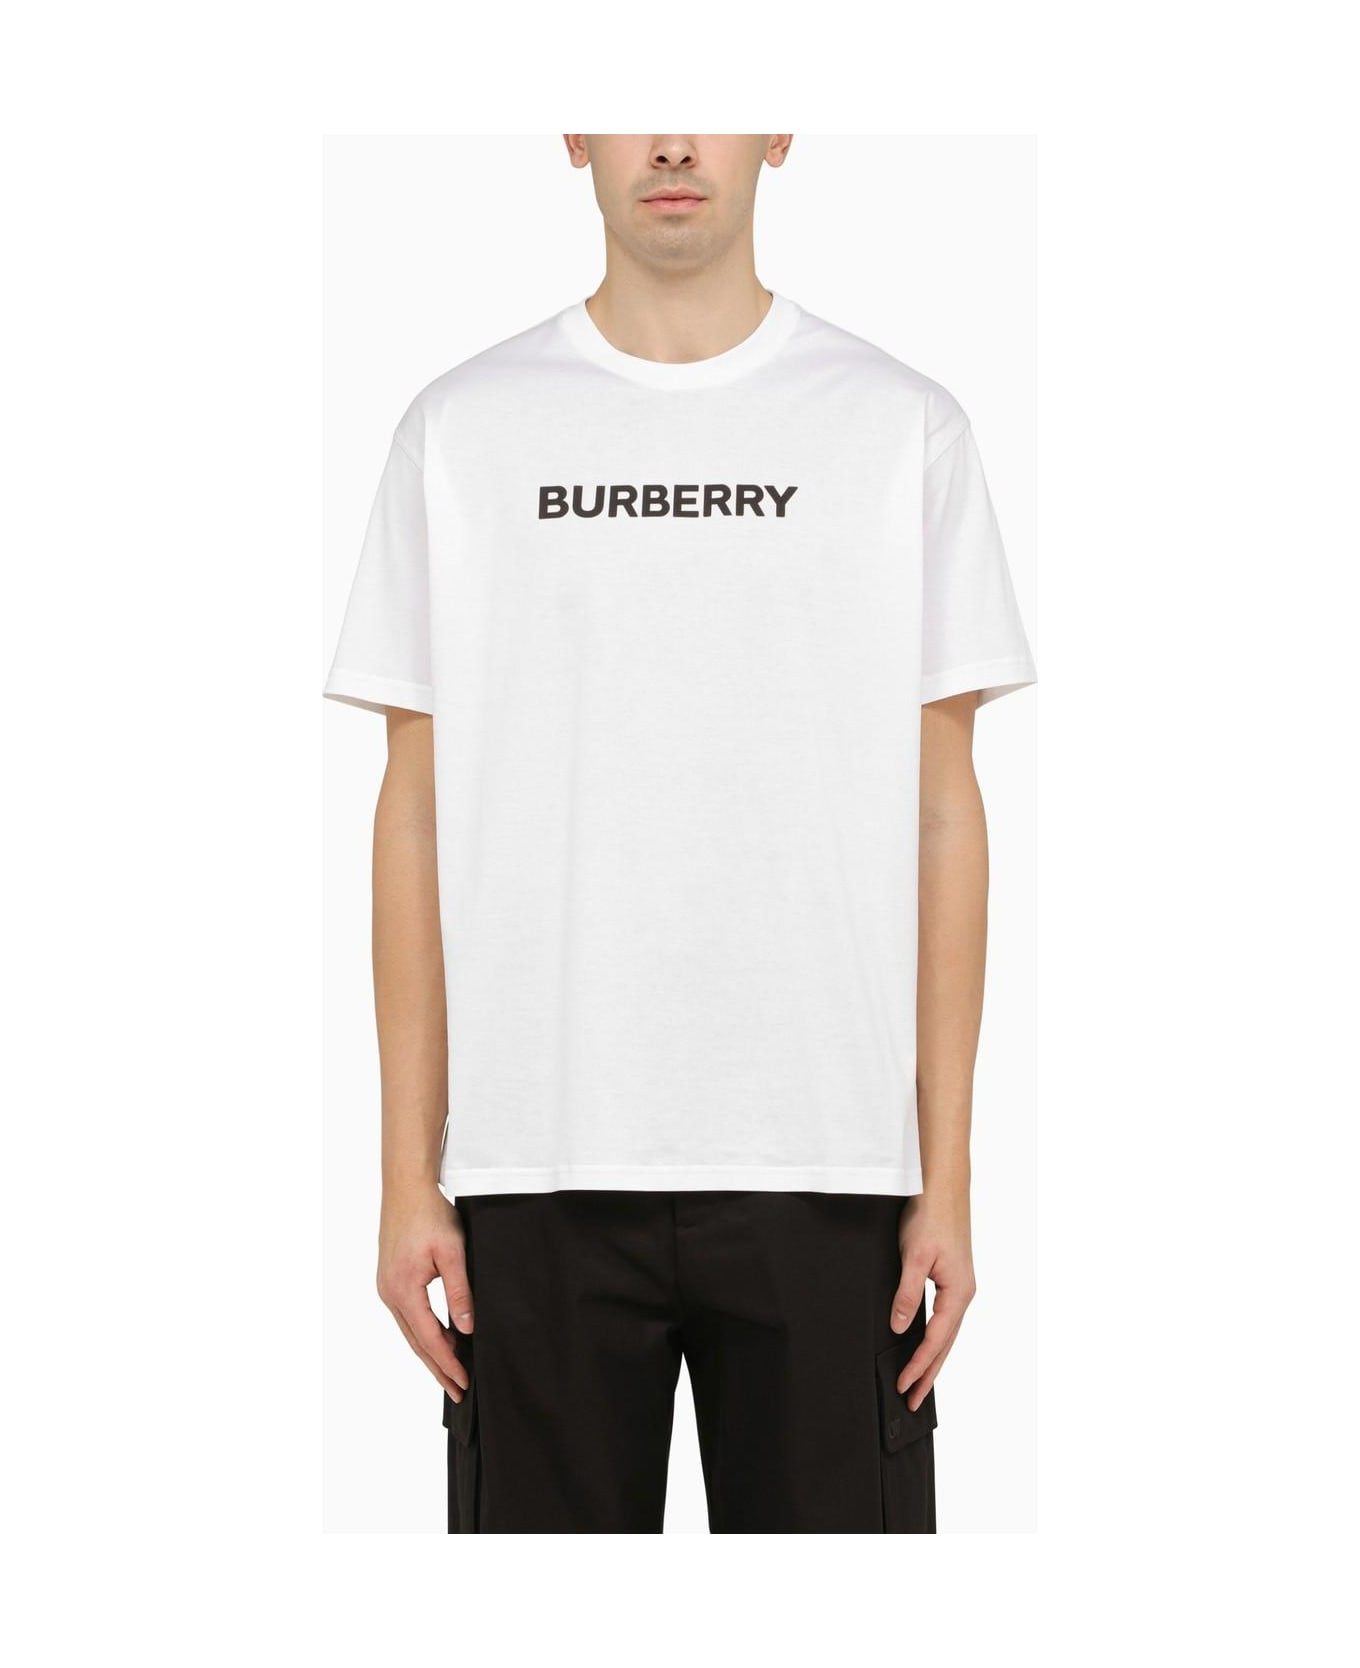 Burberry Harriston White Crew-neck T-shirt - WHITE